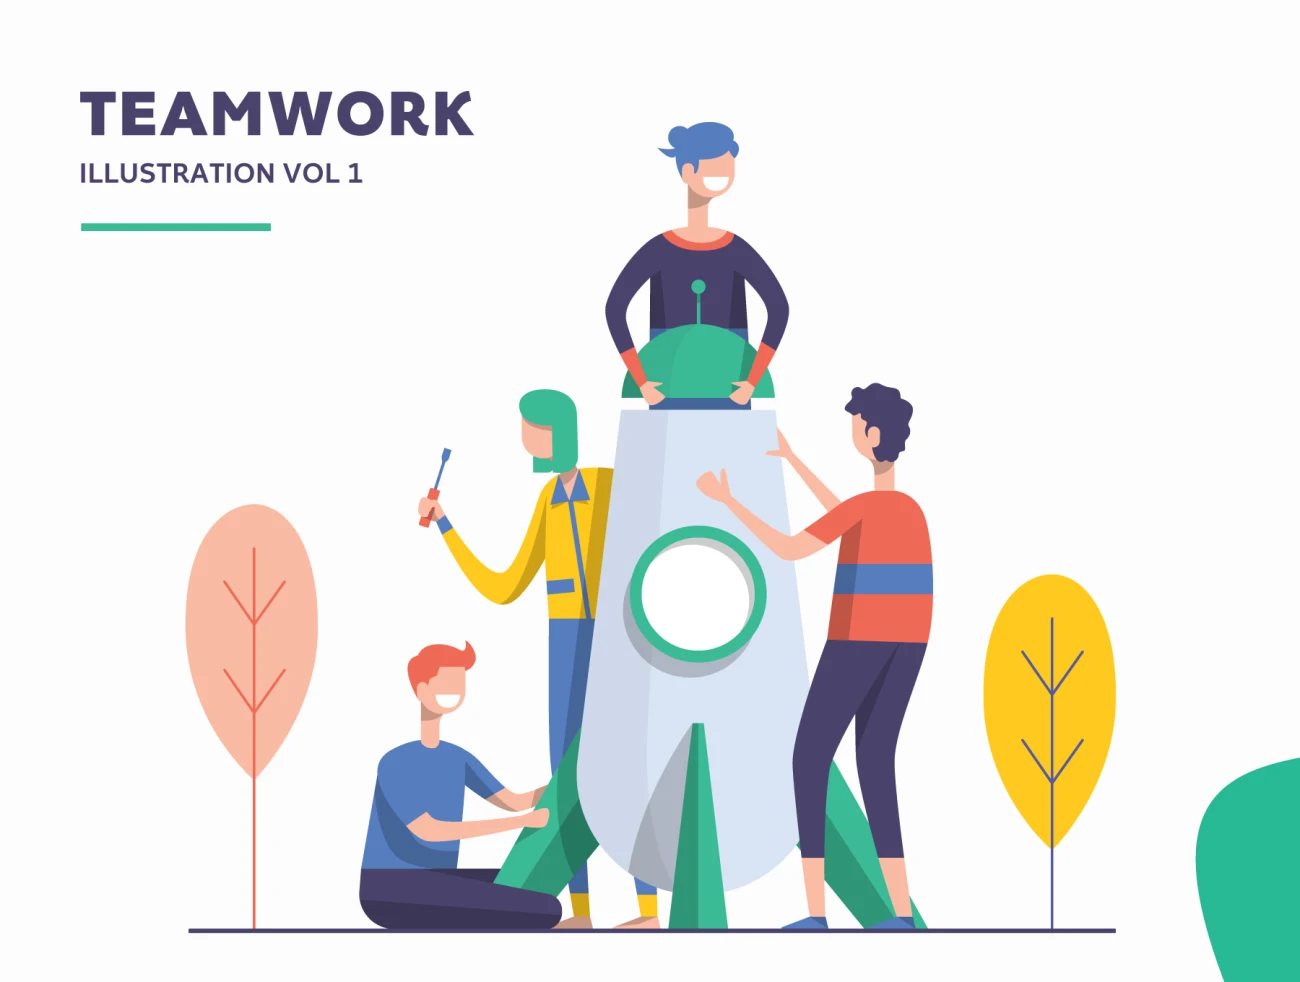 Illustration Startup Teamwork Pack Vol 1 团队合作矢量插画包合集-人物插画、商业金融、场景插画、学习生活、插画、教育医疗、社交购物、线条手绘、职场办公、营销创业、趣味漫画-到位啦UI